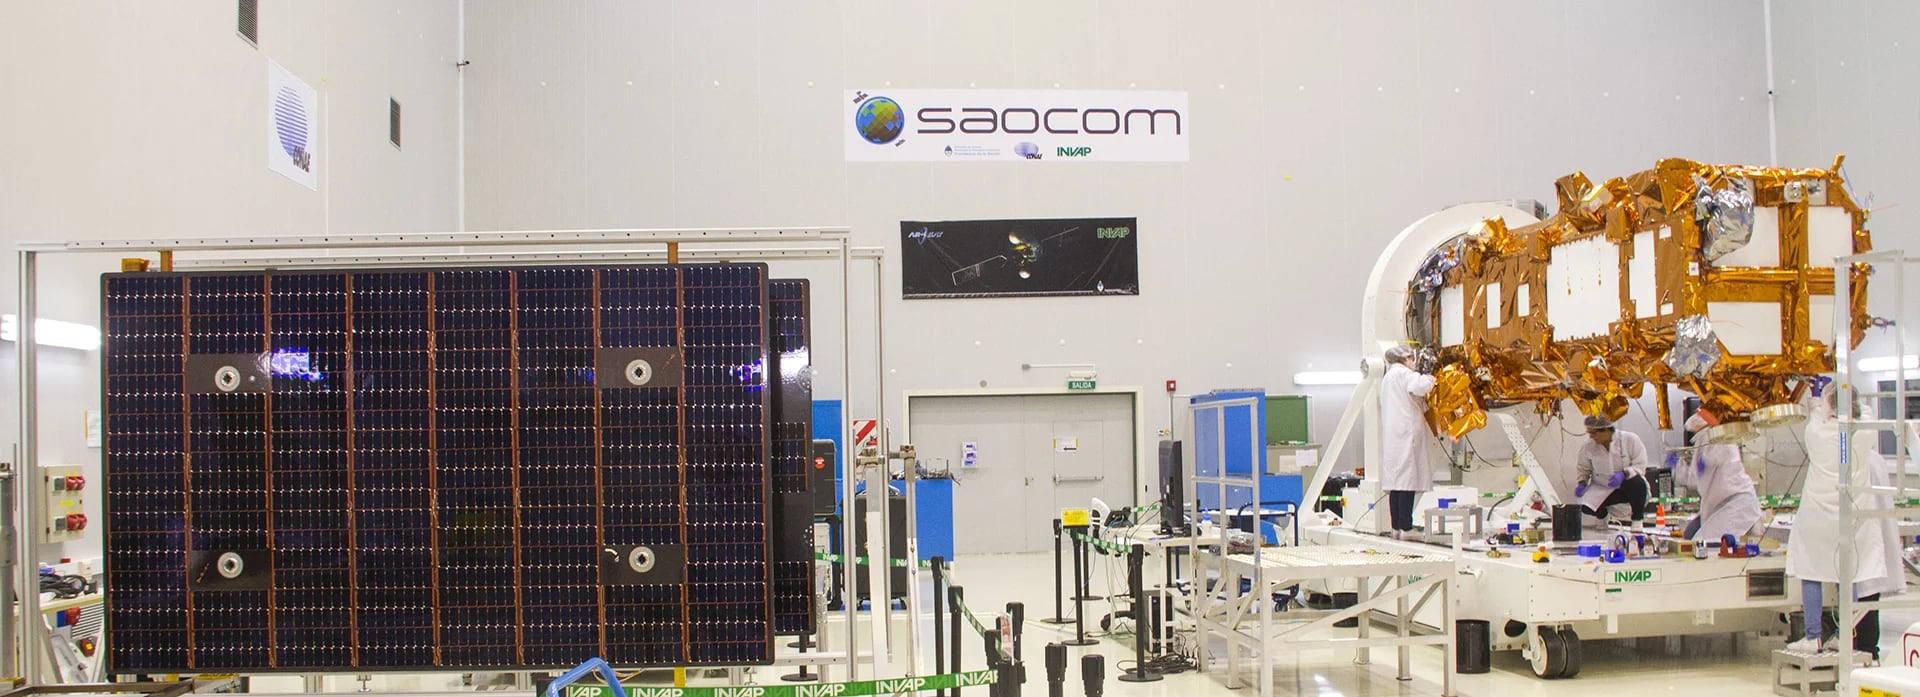 Plataforma satelital y paneles solares en INVAP, una de las empresas que participó en el desarrollo del satélite (CONAE).
